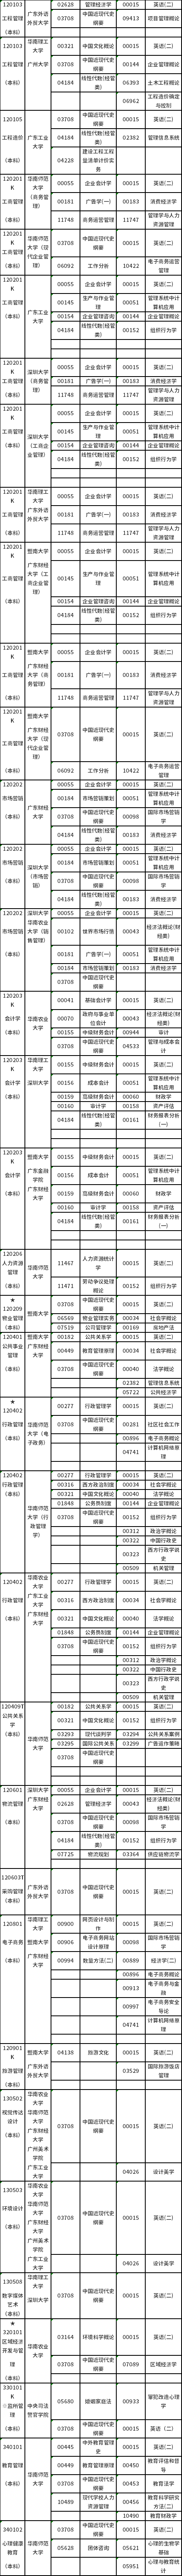 广东2022年10月23日自考开考专业及考试科目